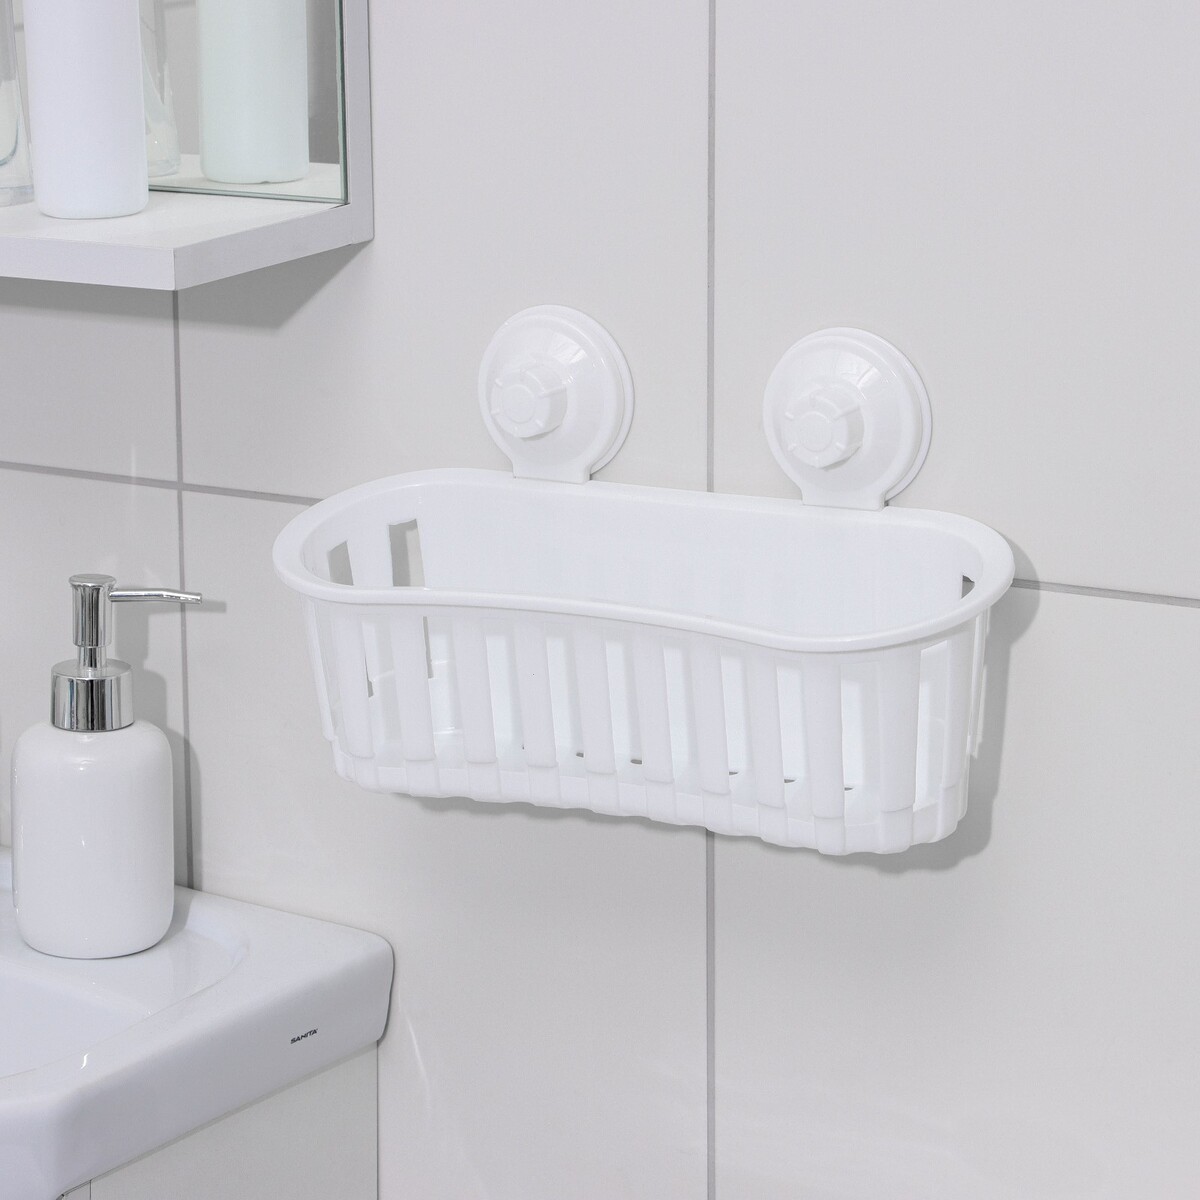 Держатель для ванных принадлежностей на вакуммных присосках, 30×11×9 см, цвет белый держатель для ножей и кухонных принадлежностей 25 5×11×5 см белый